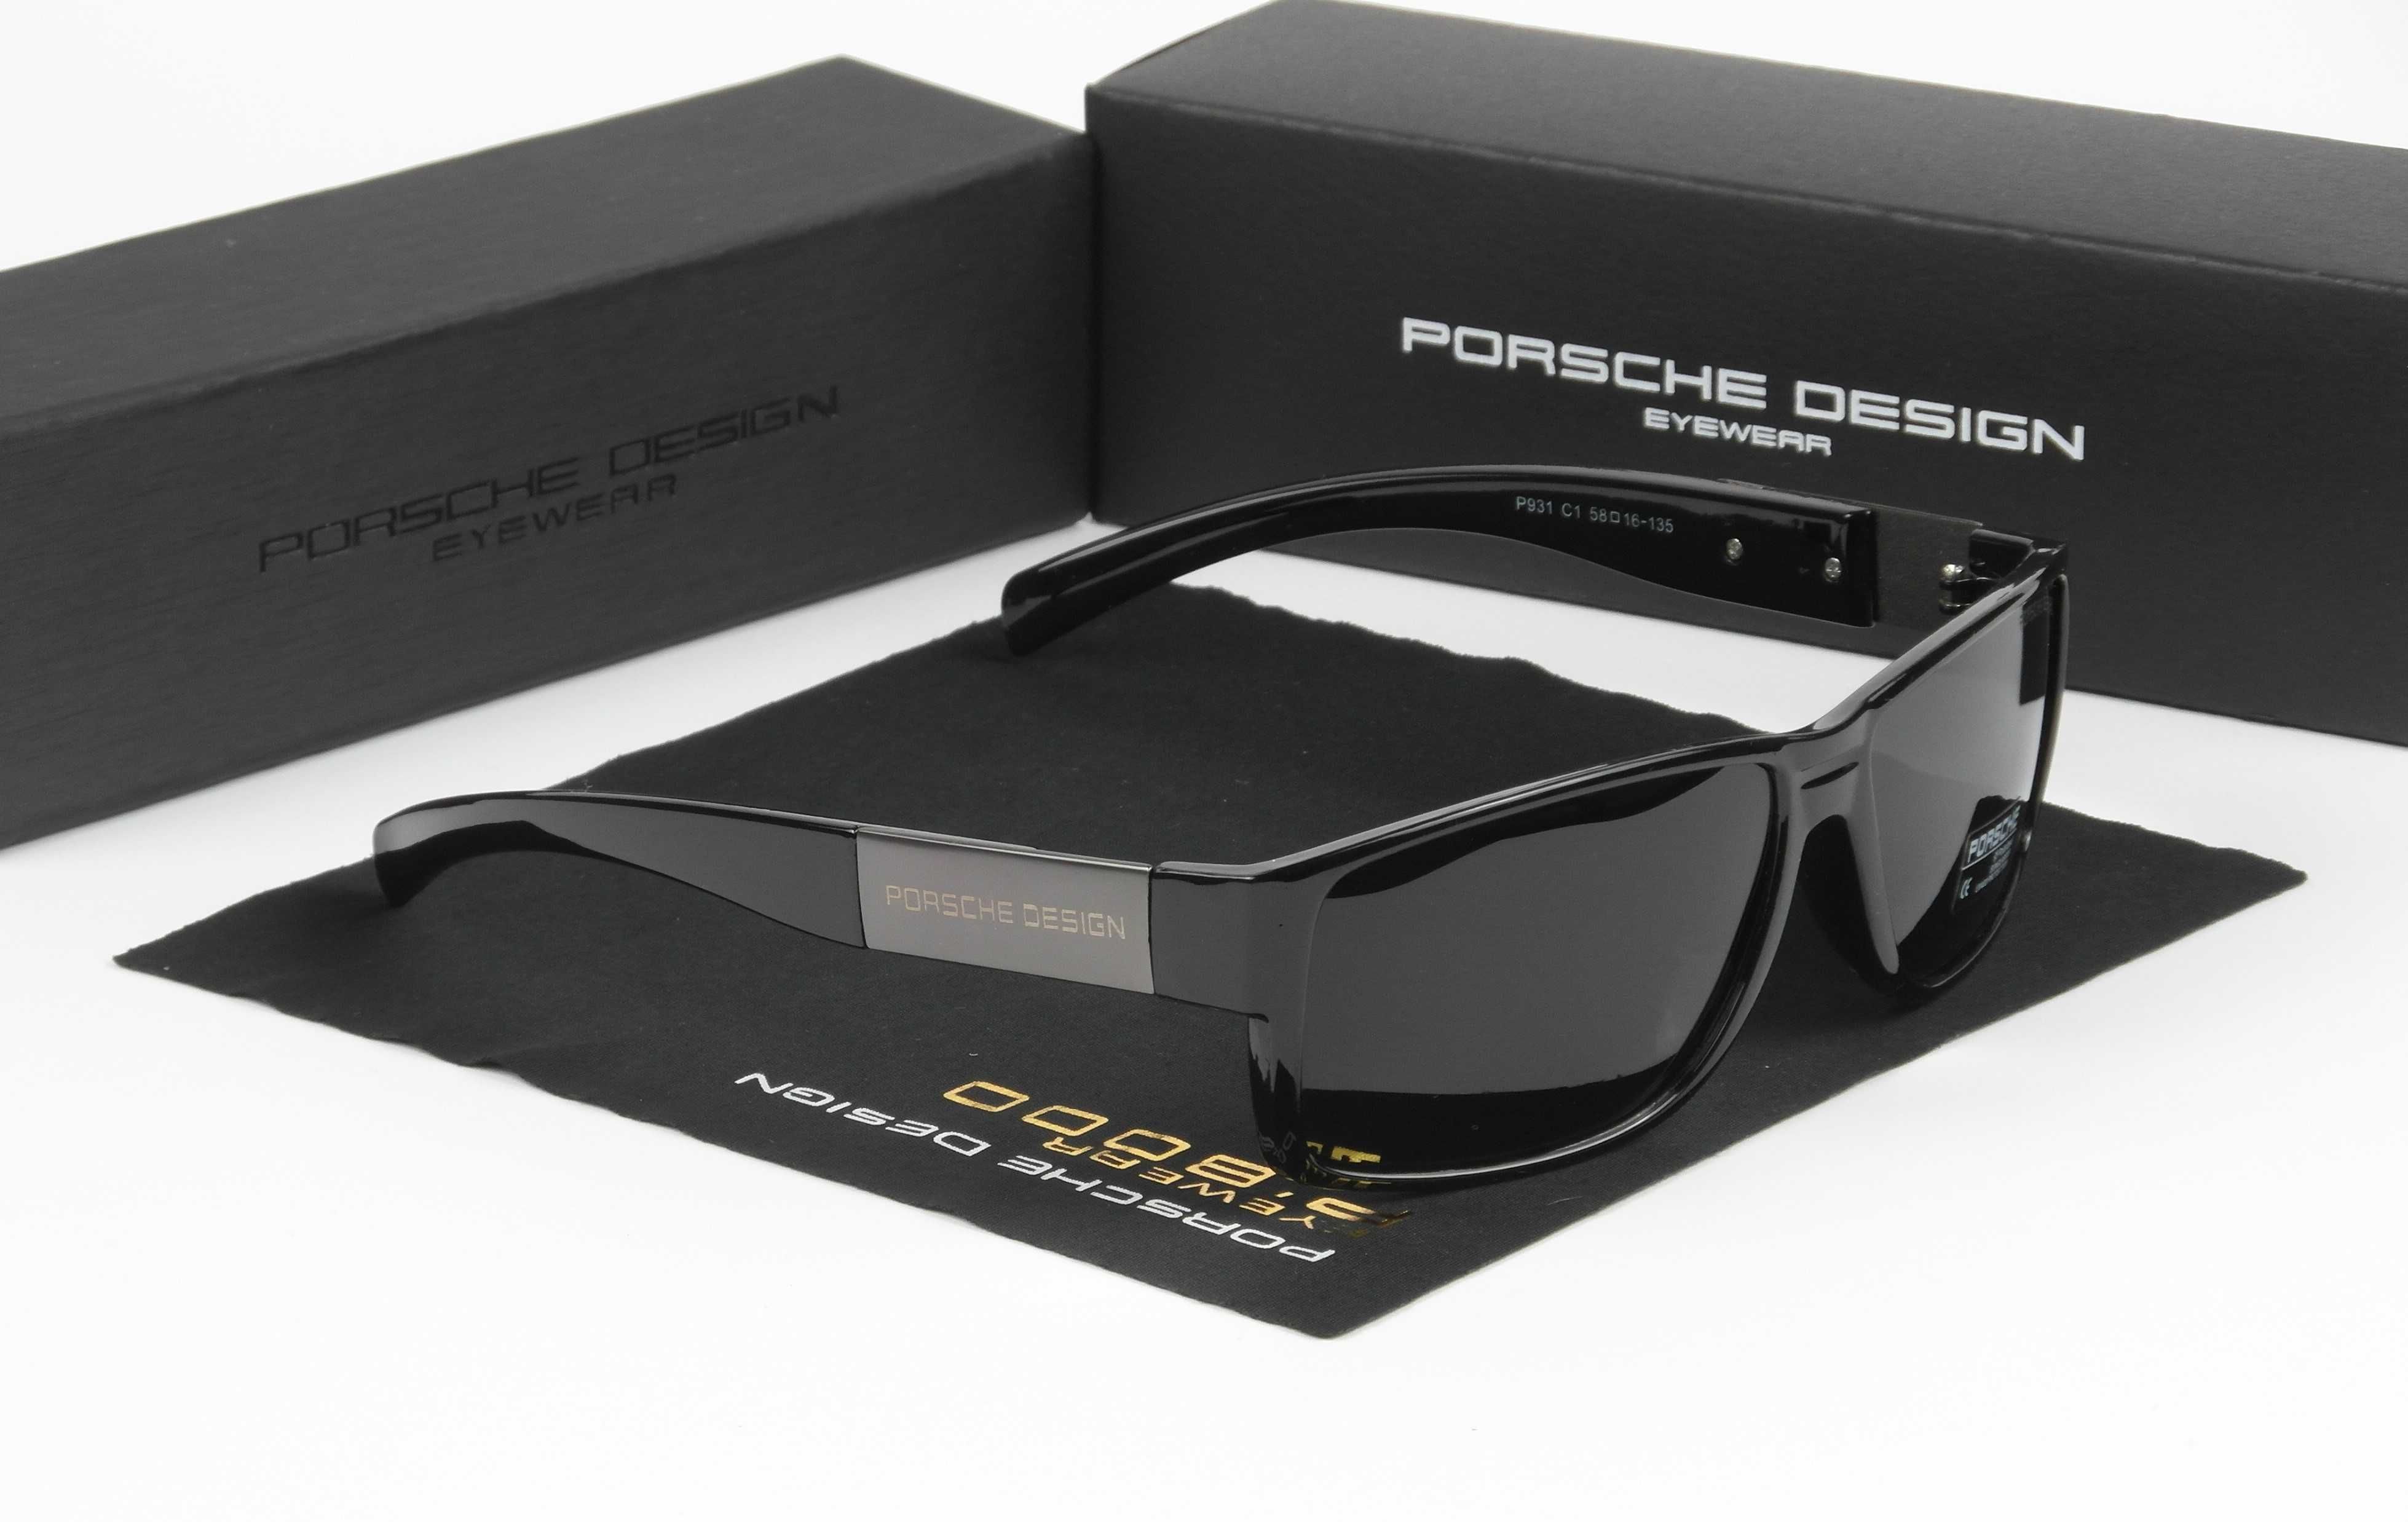 Солнцезащитные очки porsche design